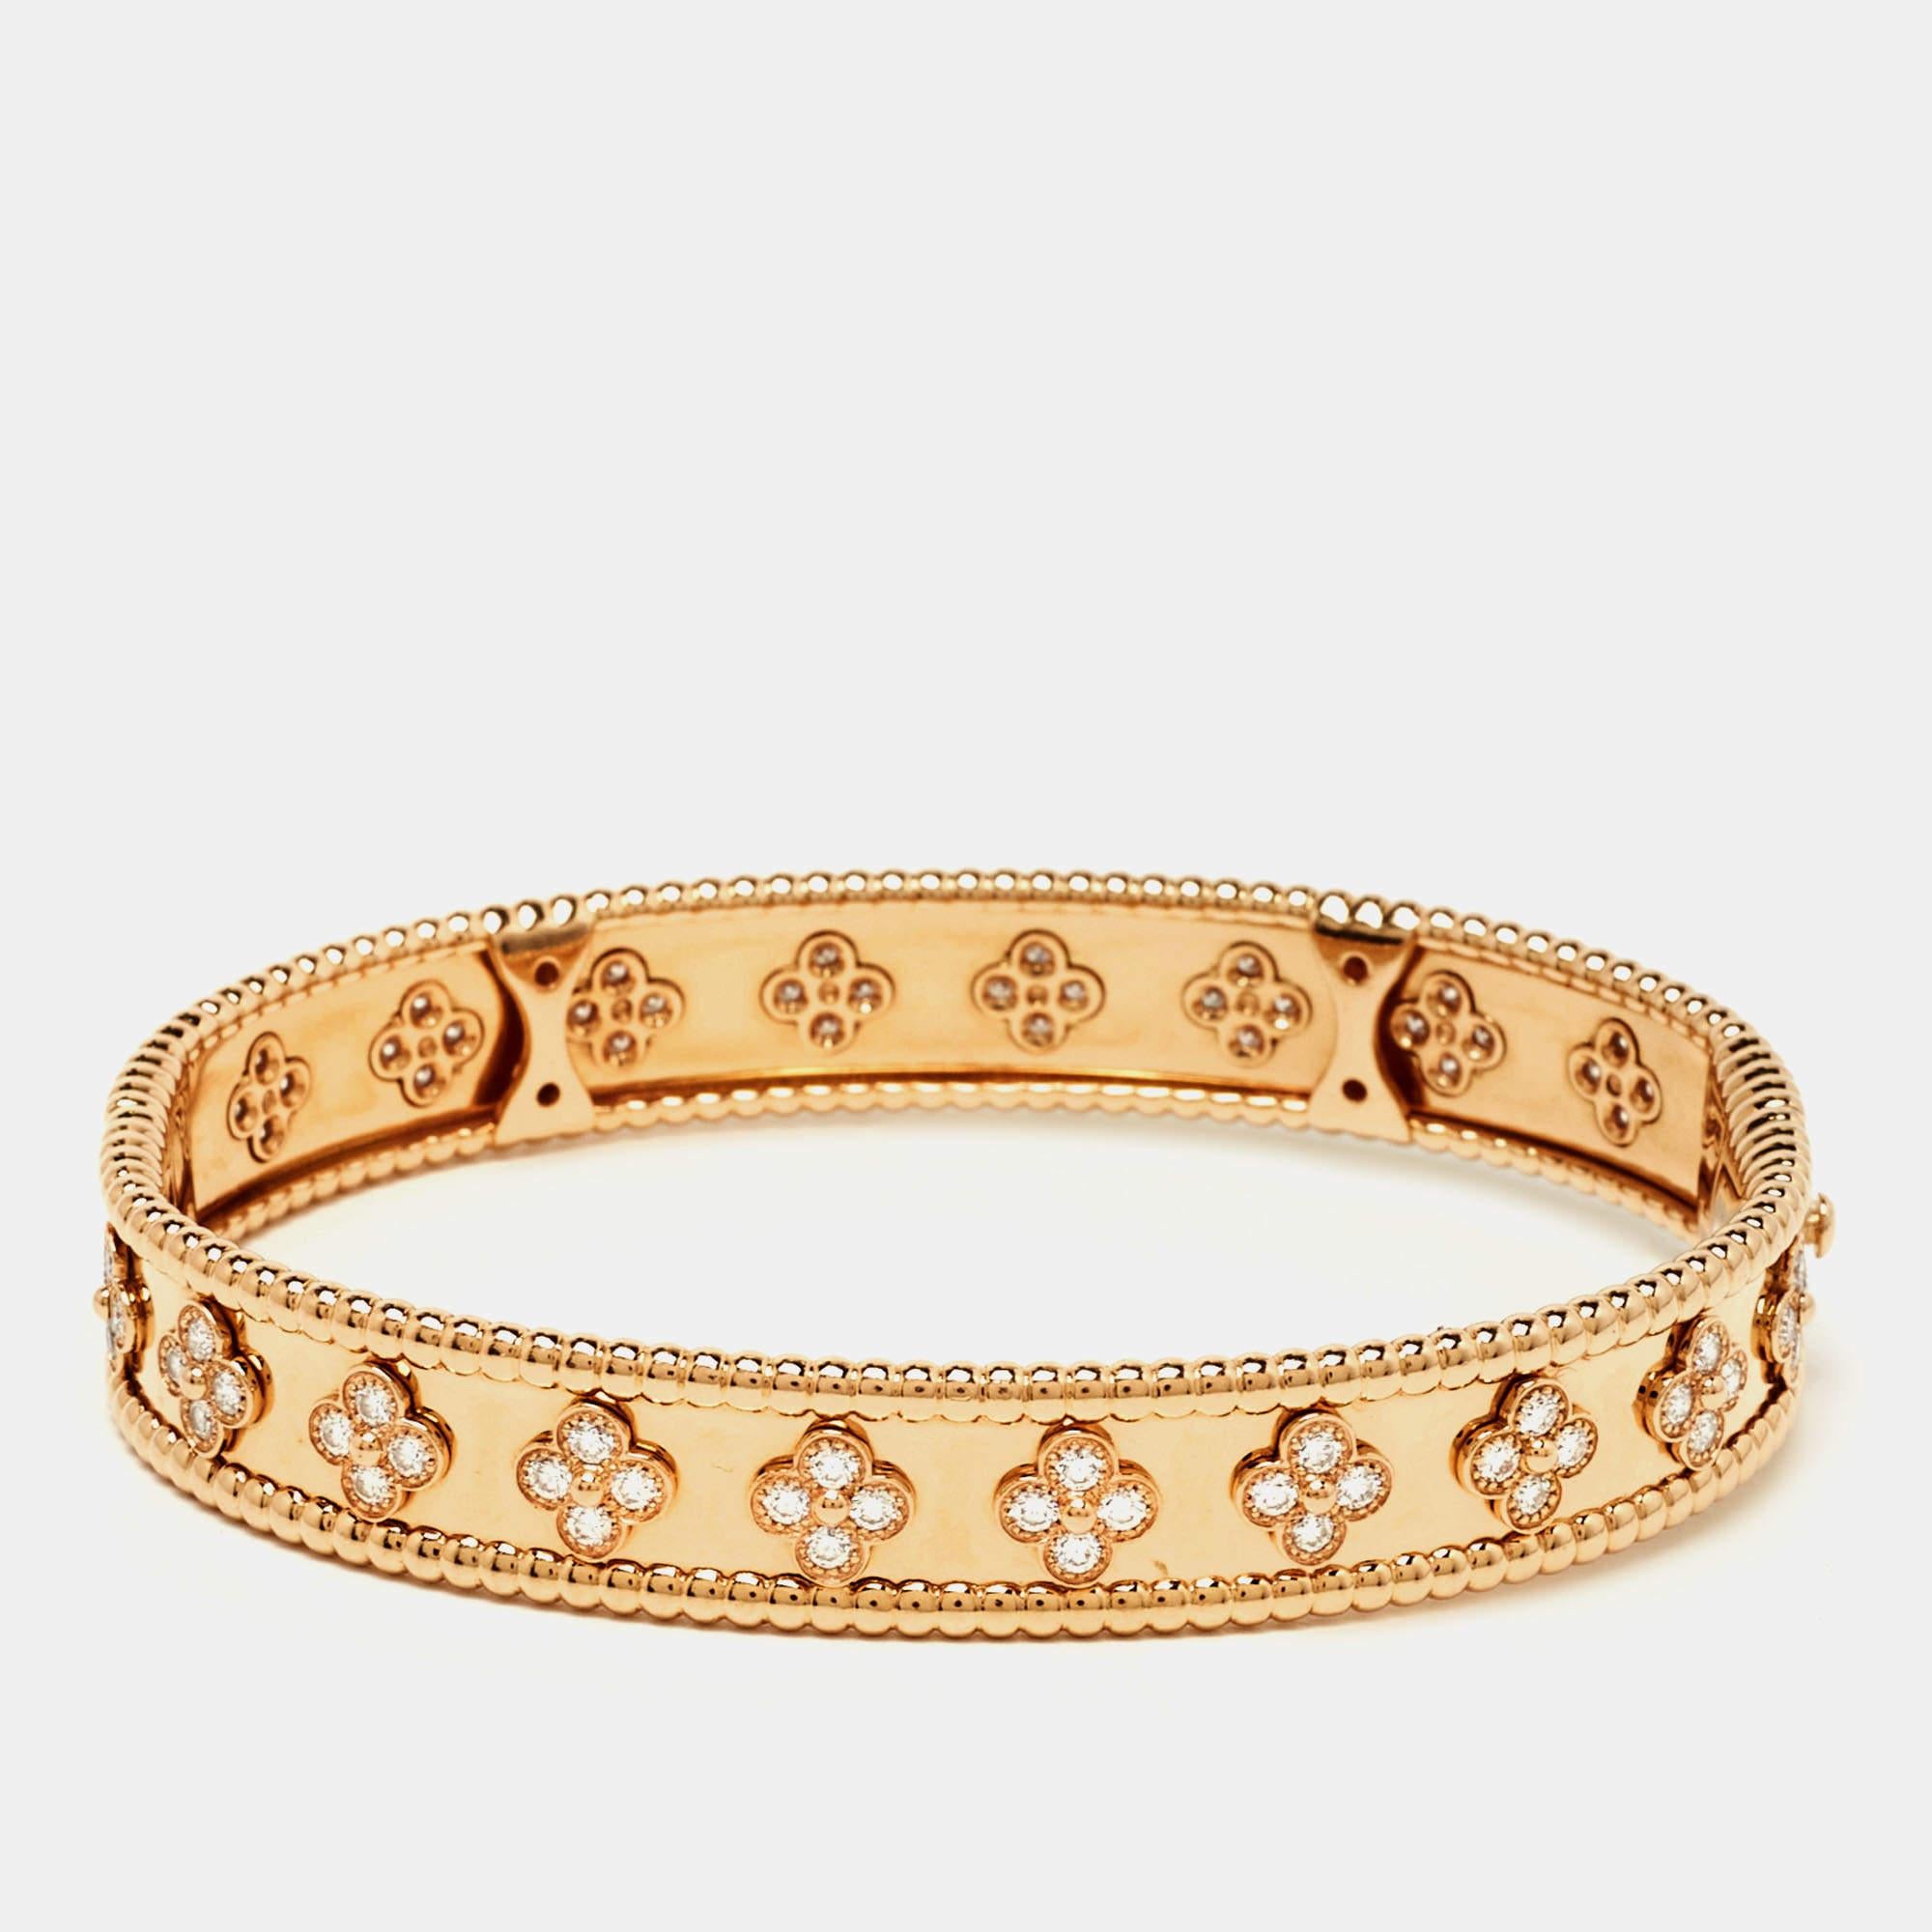 Ce bracelet Van Cleef & Arpels Perlée Sweet Clovers est un bel exemple des prouesses de VC en matière de joaillerie. Il est sculpté dans de l'or rose 18 carats et orné de rangées de perles Perlées et de motifs de trèfles sertis de diamants. Le bijou